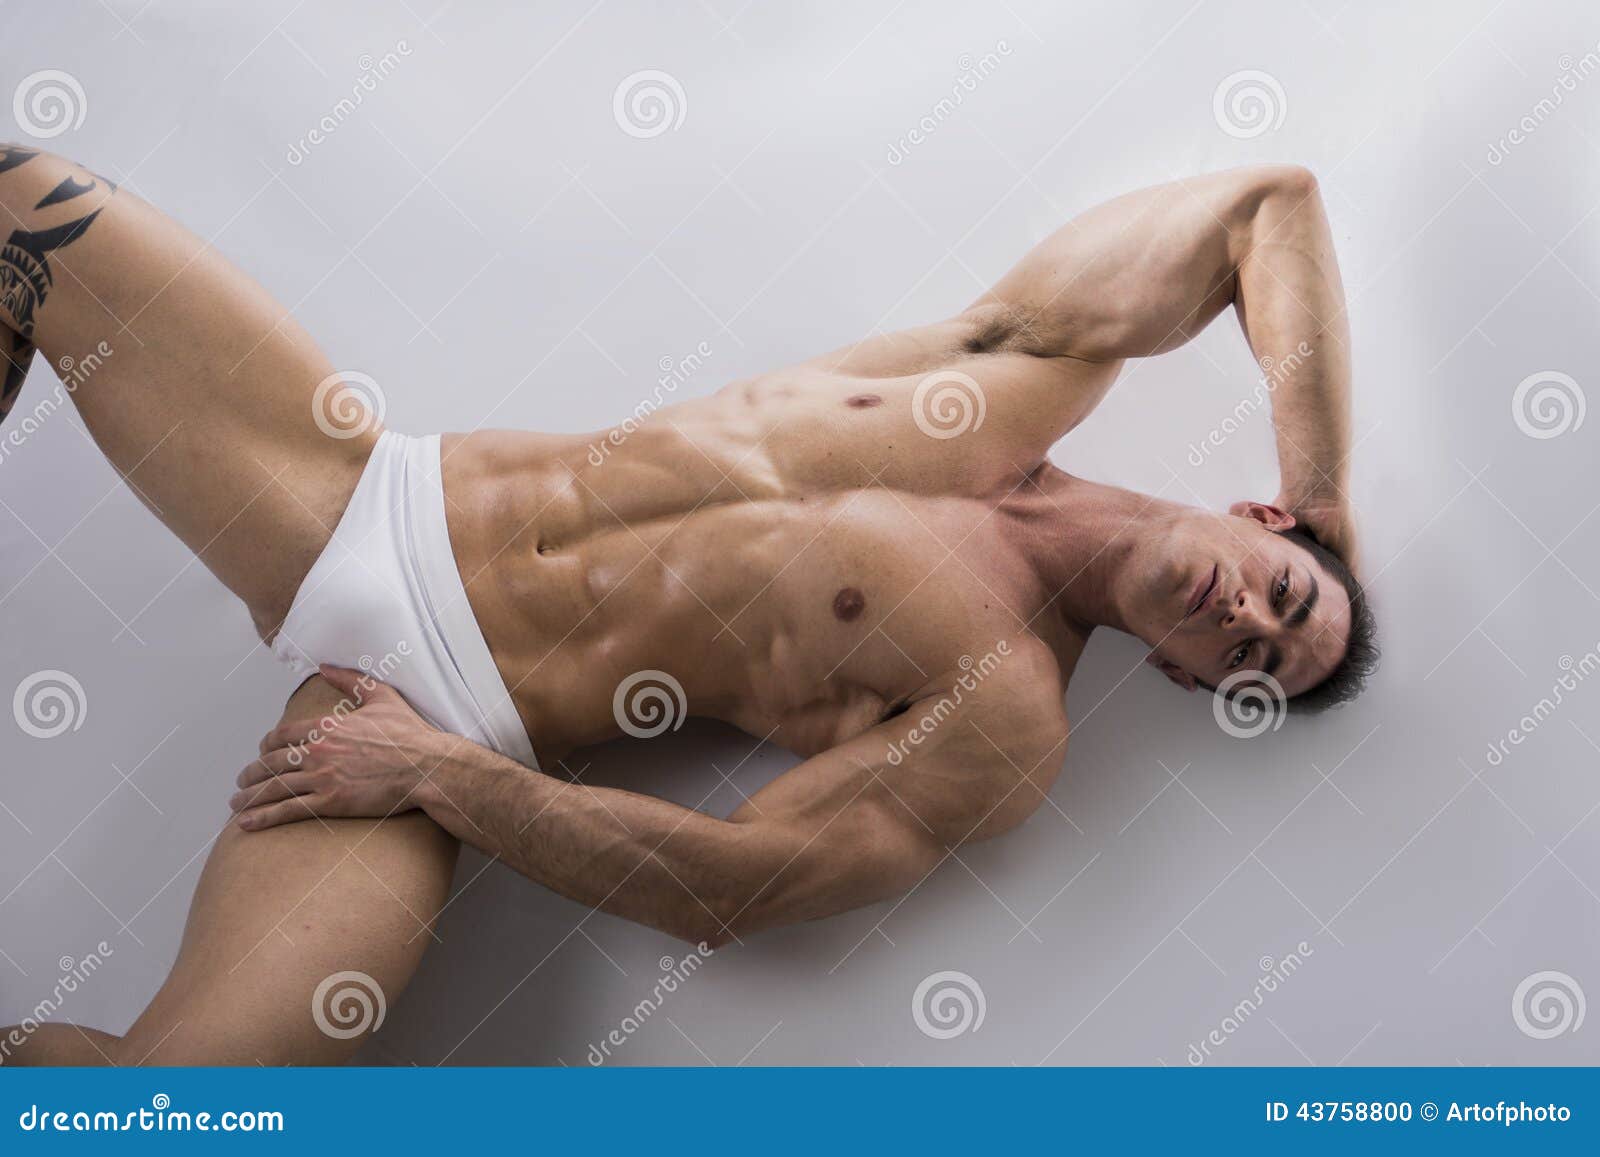 Nude Emo Girl Pics Naked Man Lying Down